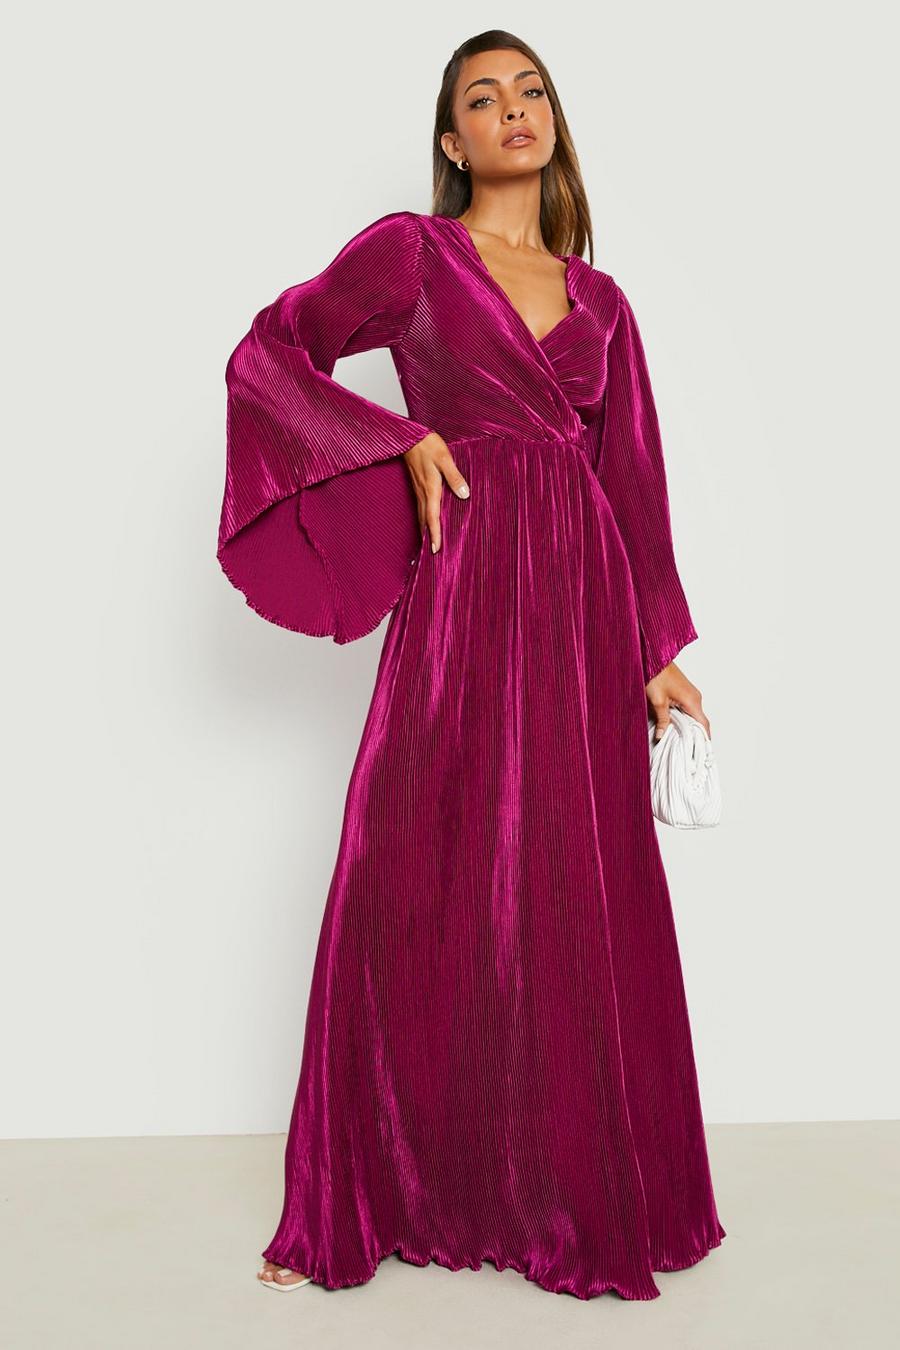 Robe kimono plissée, Jewel purple